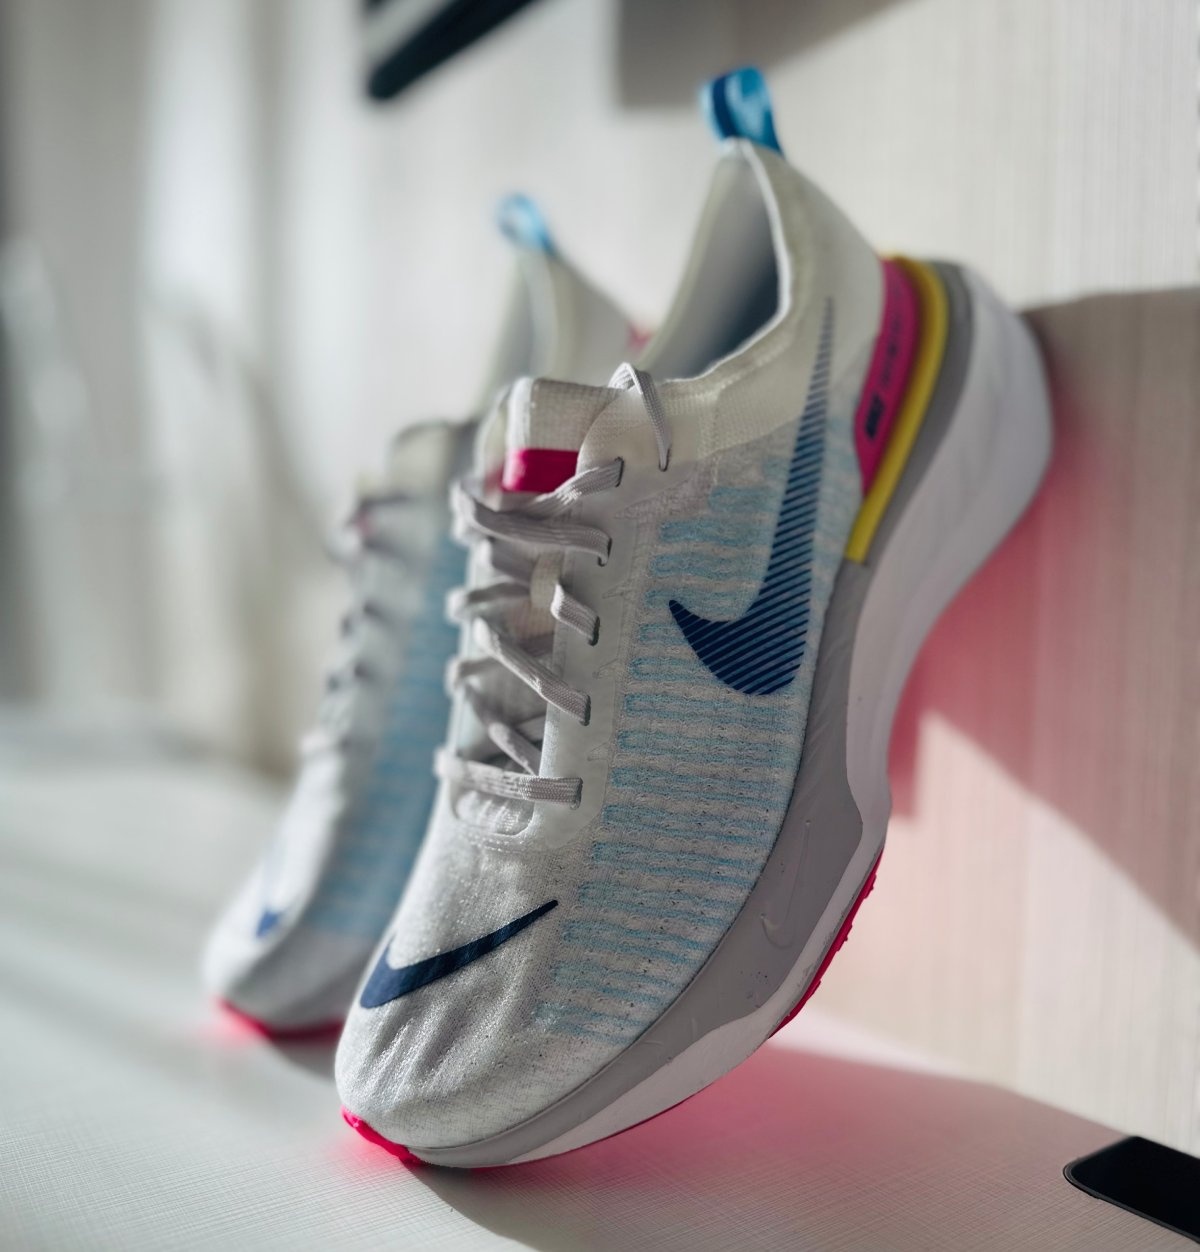 Nike setzt bei Invincible 3 neue Maßstäbe: Neue Farben dominieren den Dämpfungsmarkt